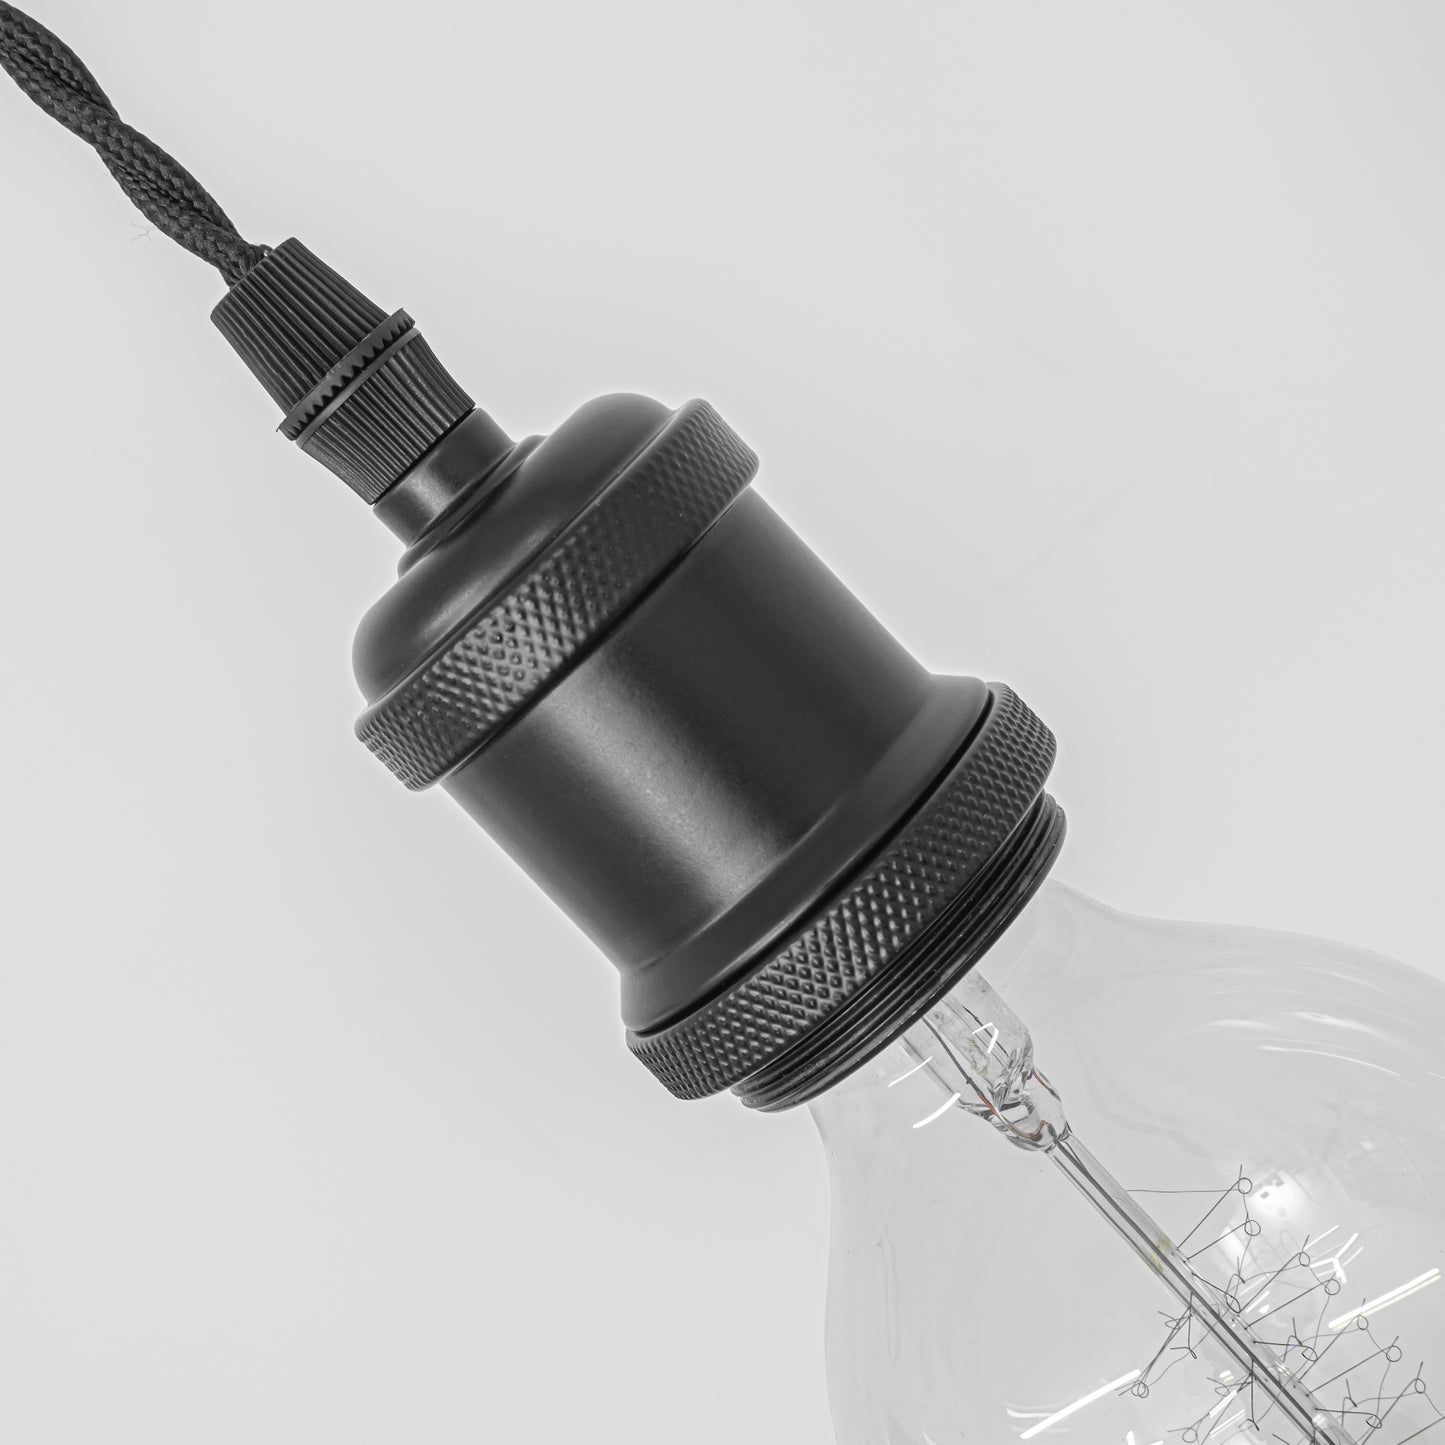 FSLIVING レトロ 電球付き 1灯ペンダント コンセント式 (コード長さ1.8ｍ) 吊り下げ高さ調節可 調光スイッチ付き 調光電球対応古アンティーク紐 真鍮メッキ古仕上げ インテリア照明